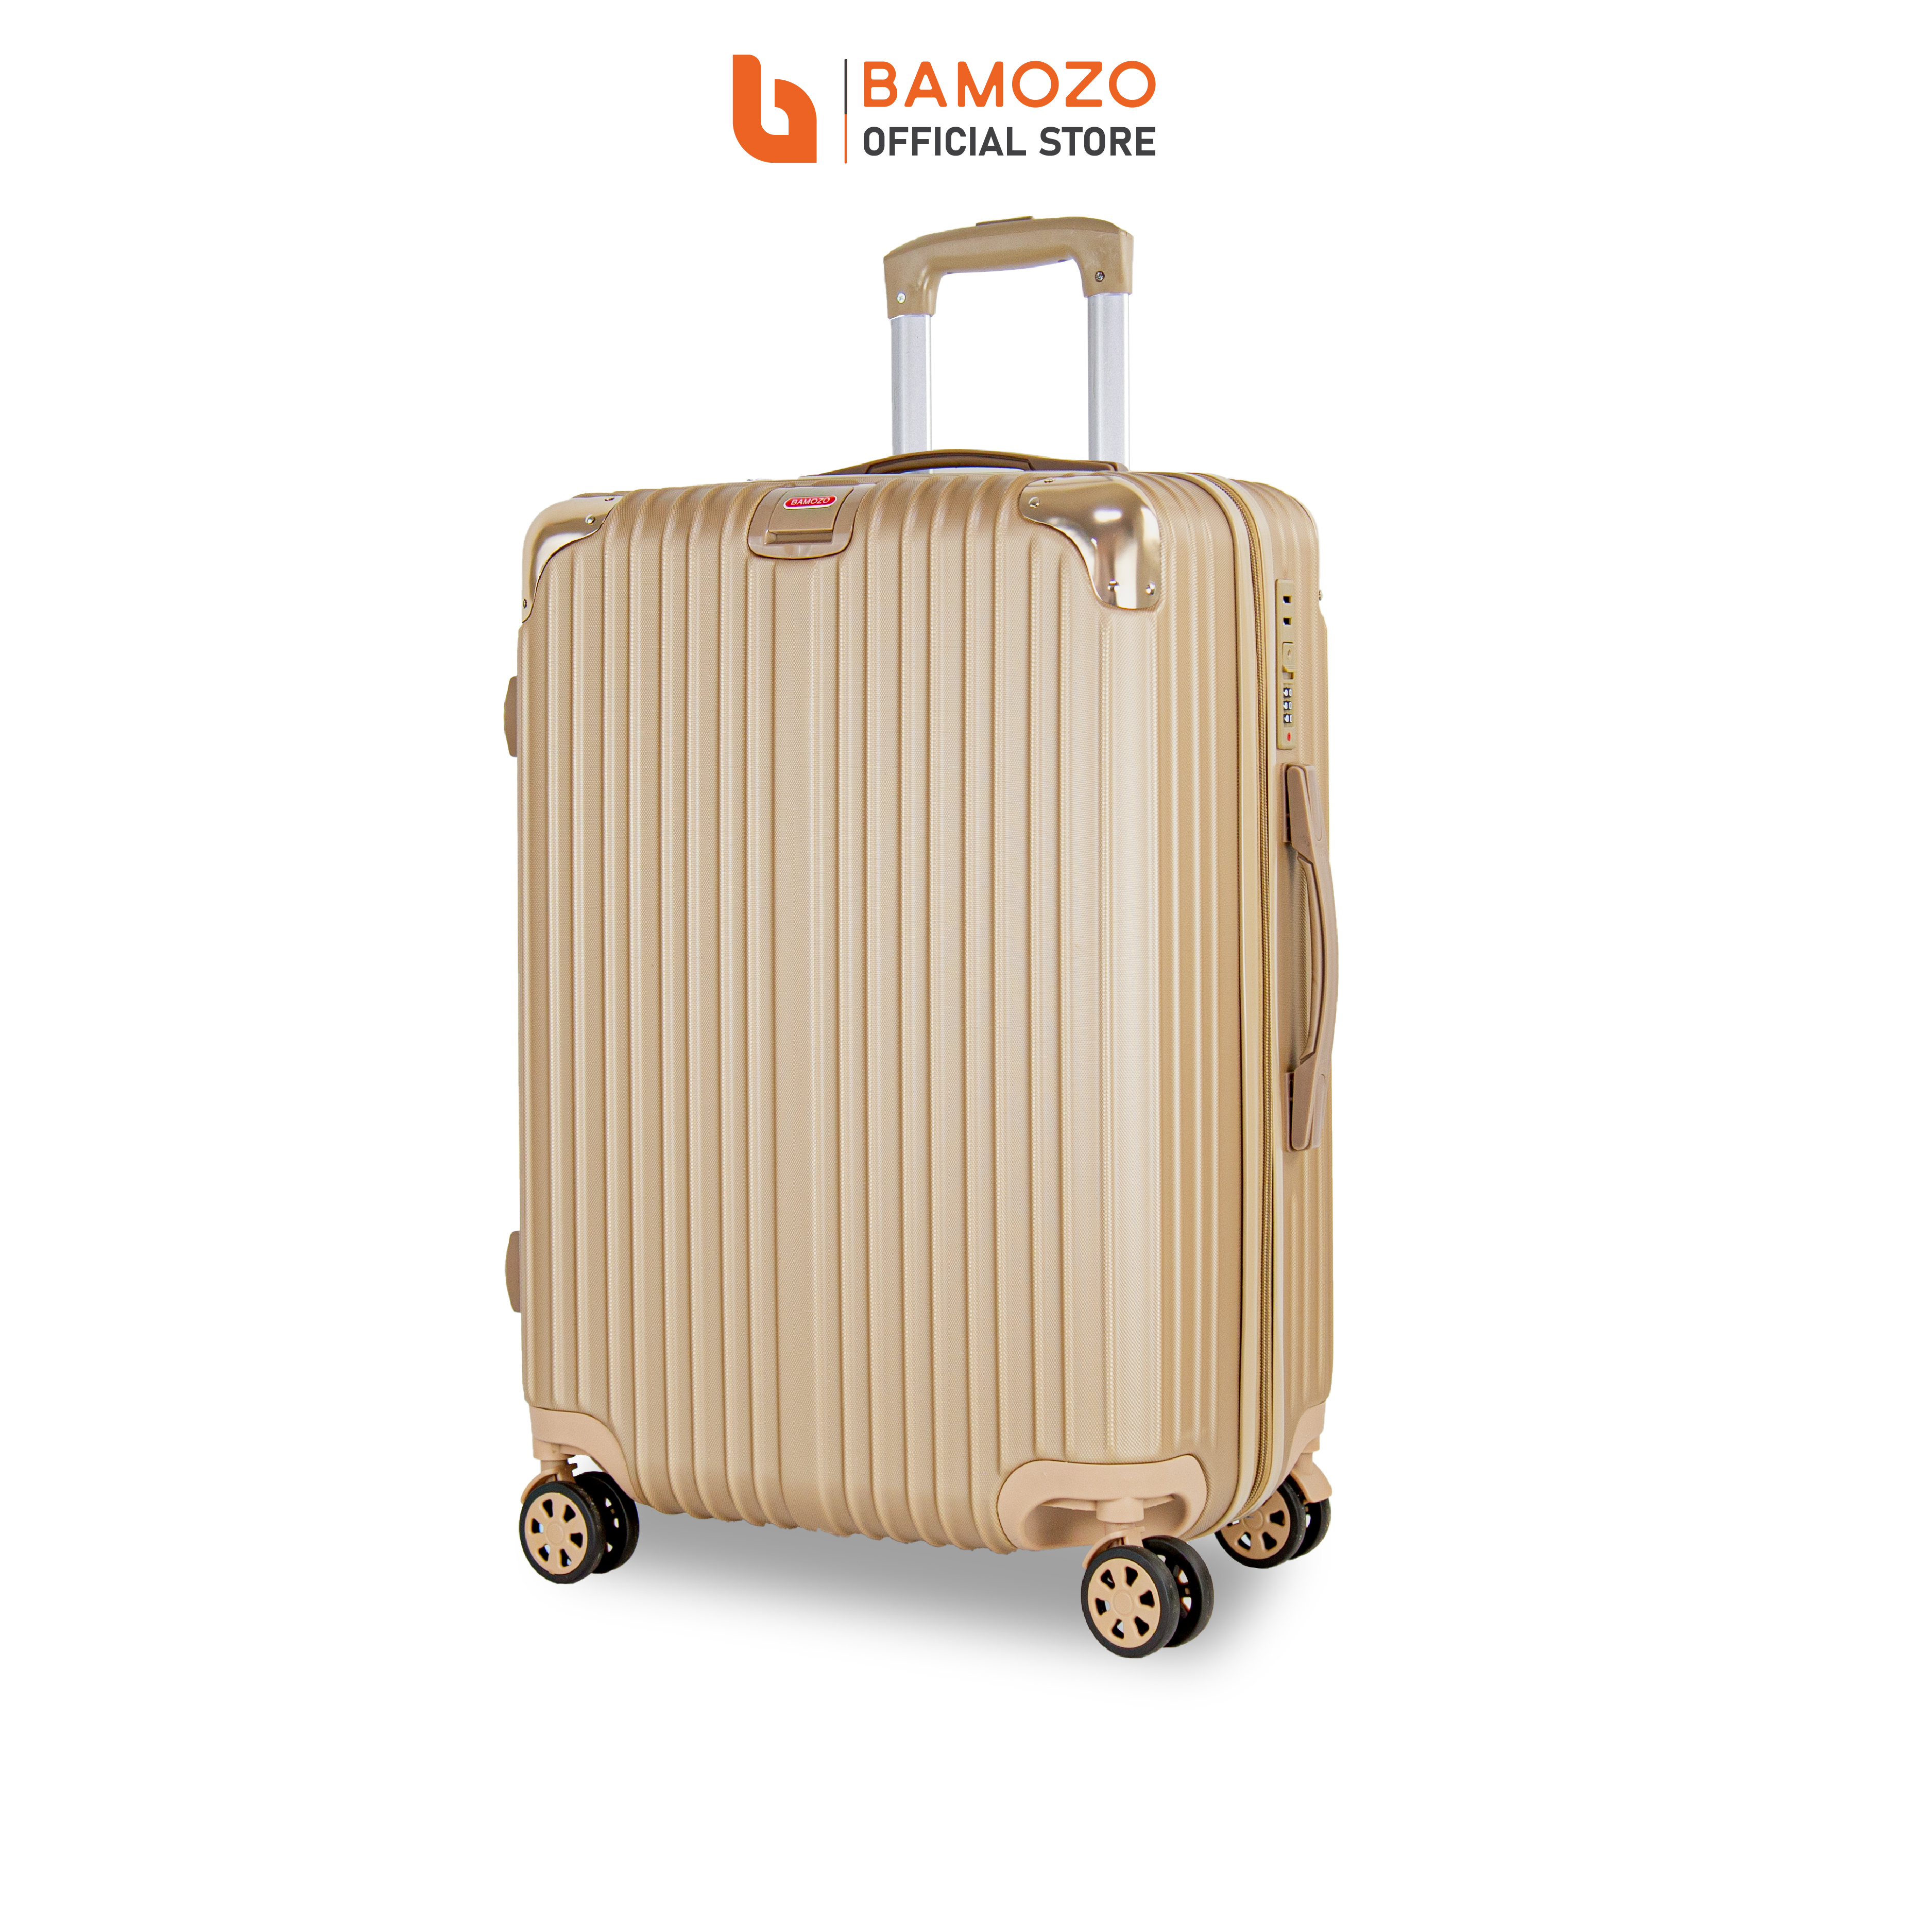 Vali du lịch BAMOZO 8809 MÀU VÀNG ĐỒNG size 20/24/28 , vali nhựa kéo bảo hành 5 năm